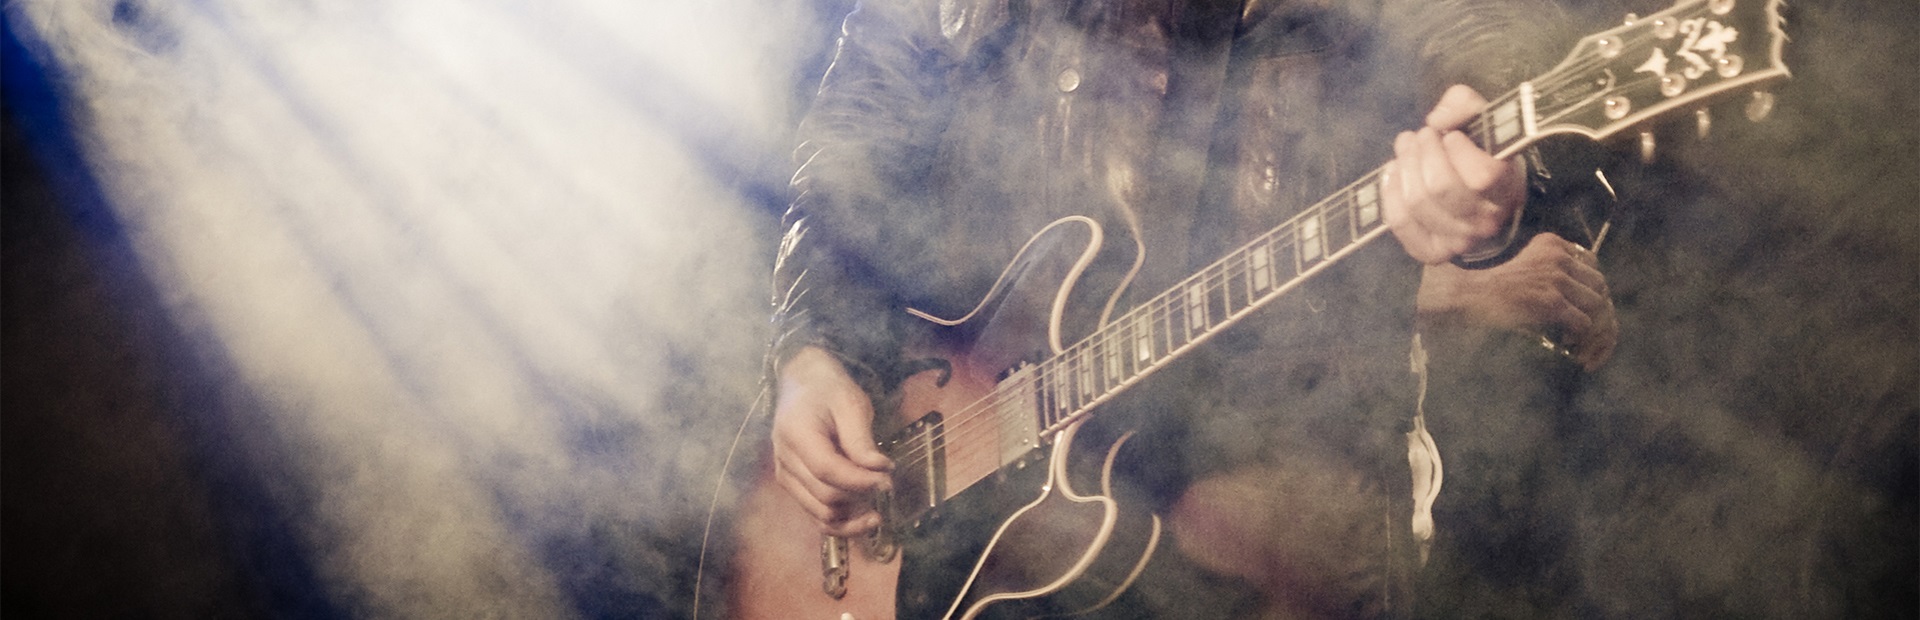 Zdjęcie muzyka podczas koncertu grającego na gitarze.      